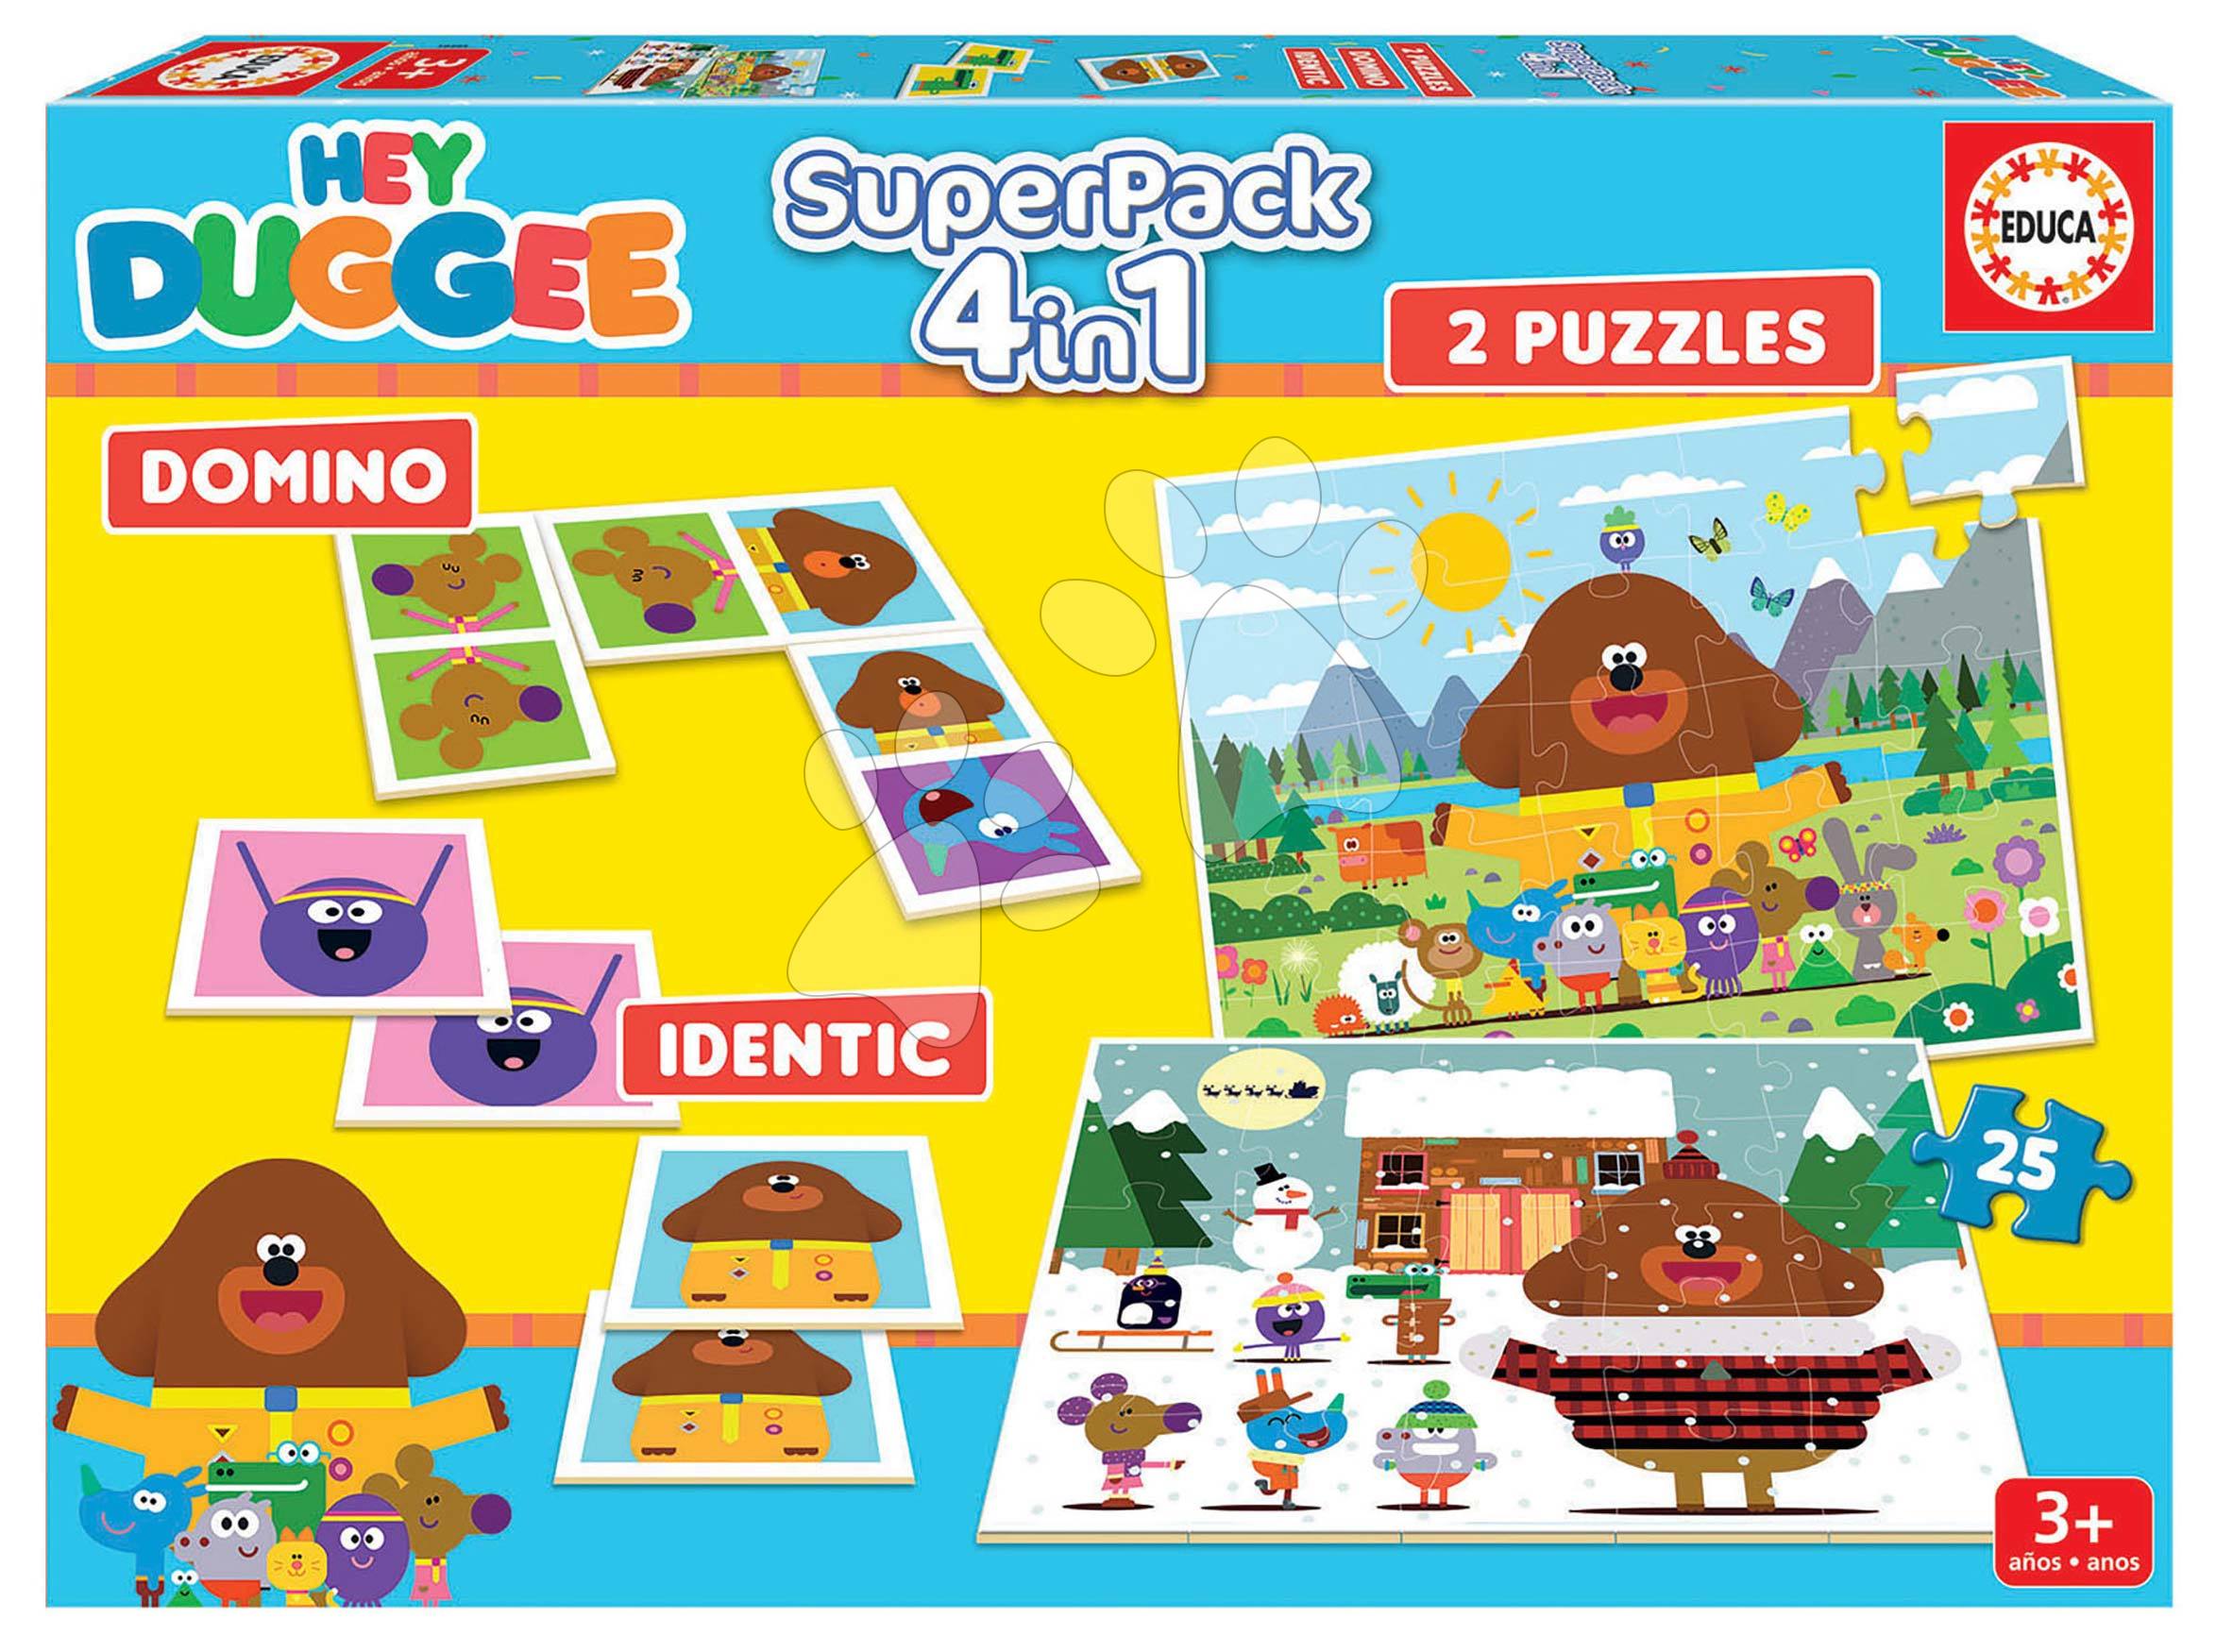 Progresszív gyerek puzzle - Superpack 4in1 Hey Duggee Educa domino pexeso és 2 puzzle 25 darabos